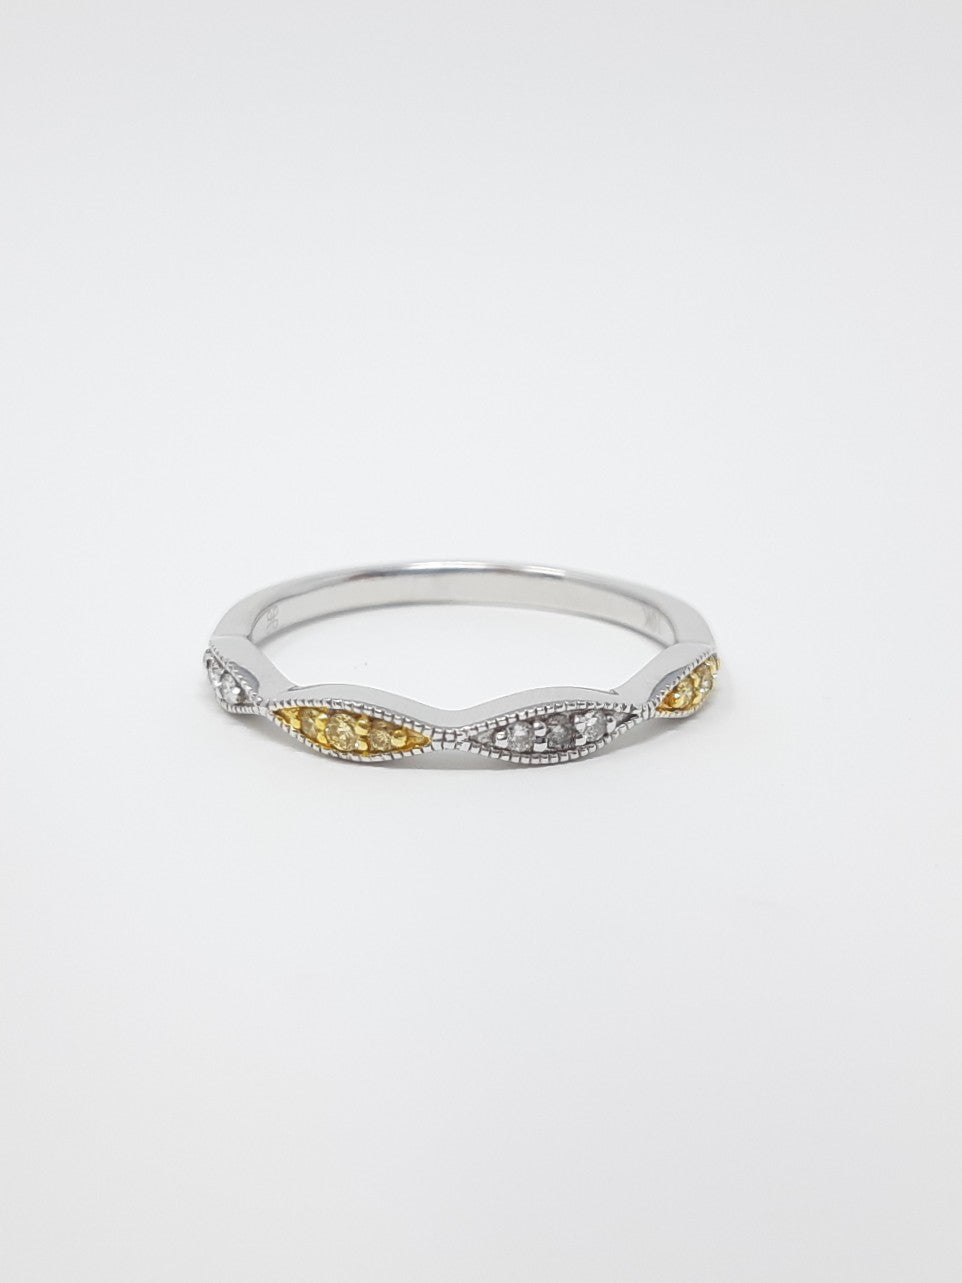 White and Yellow Diamond Ring